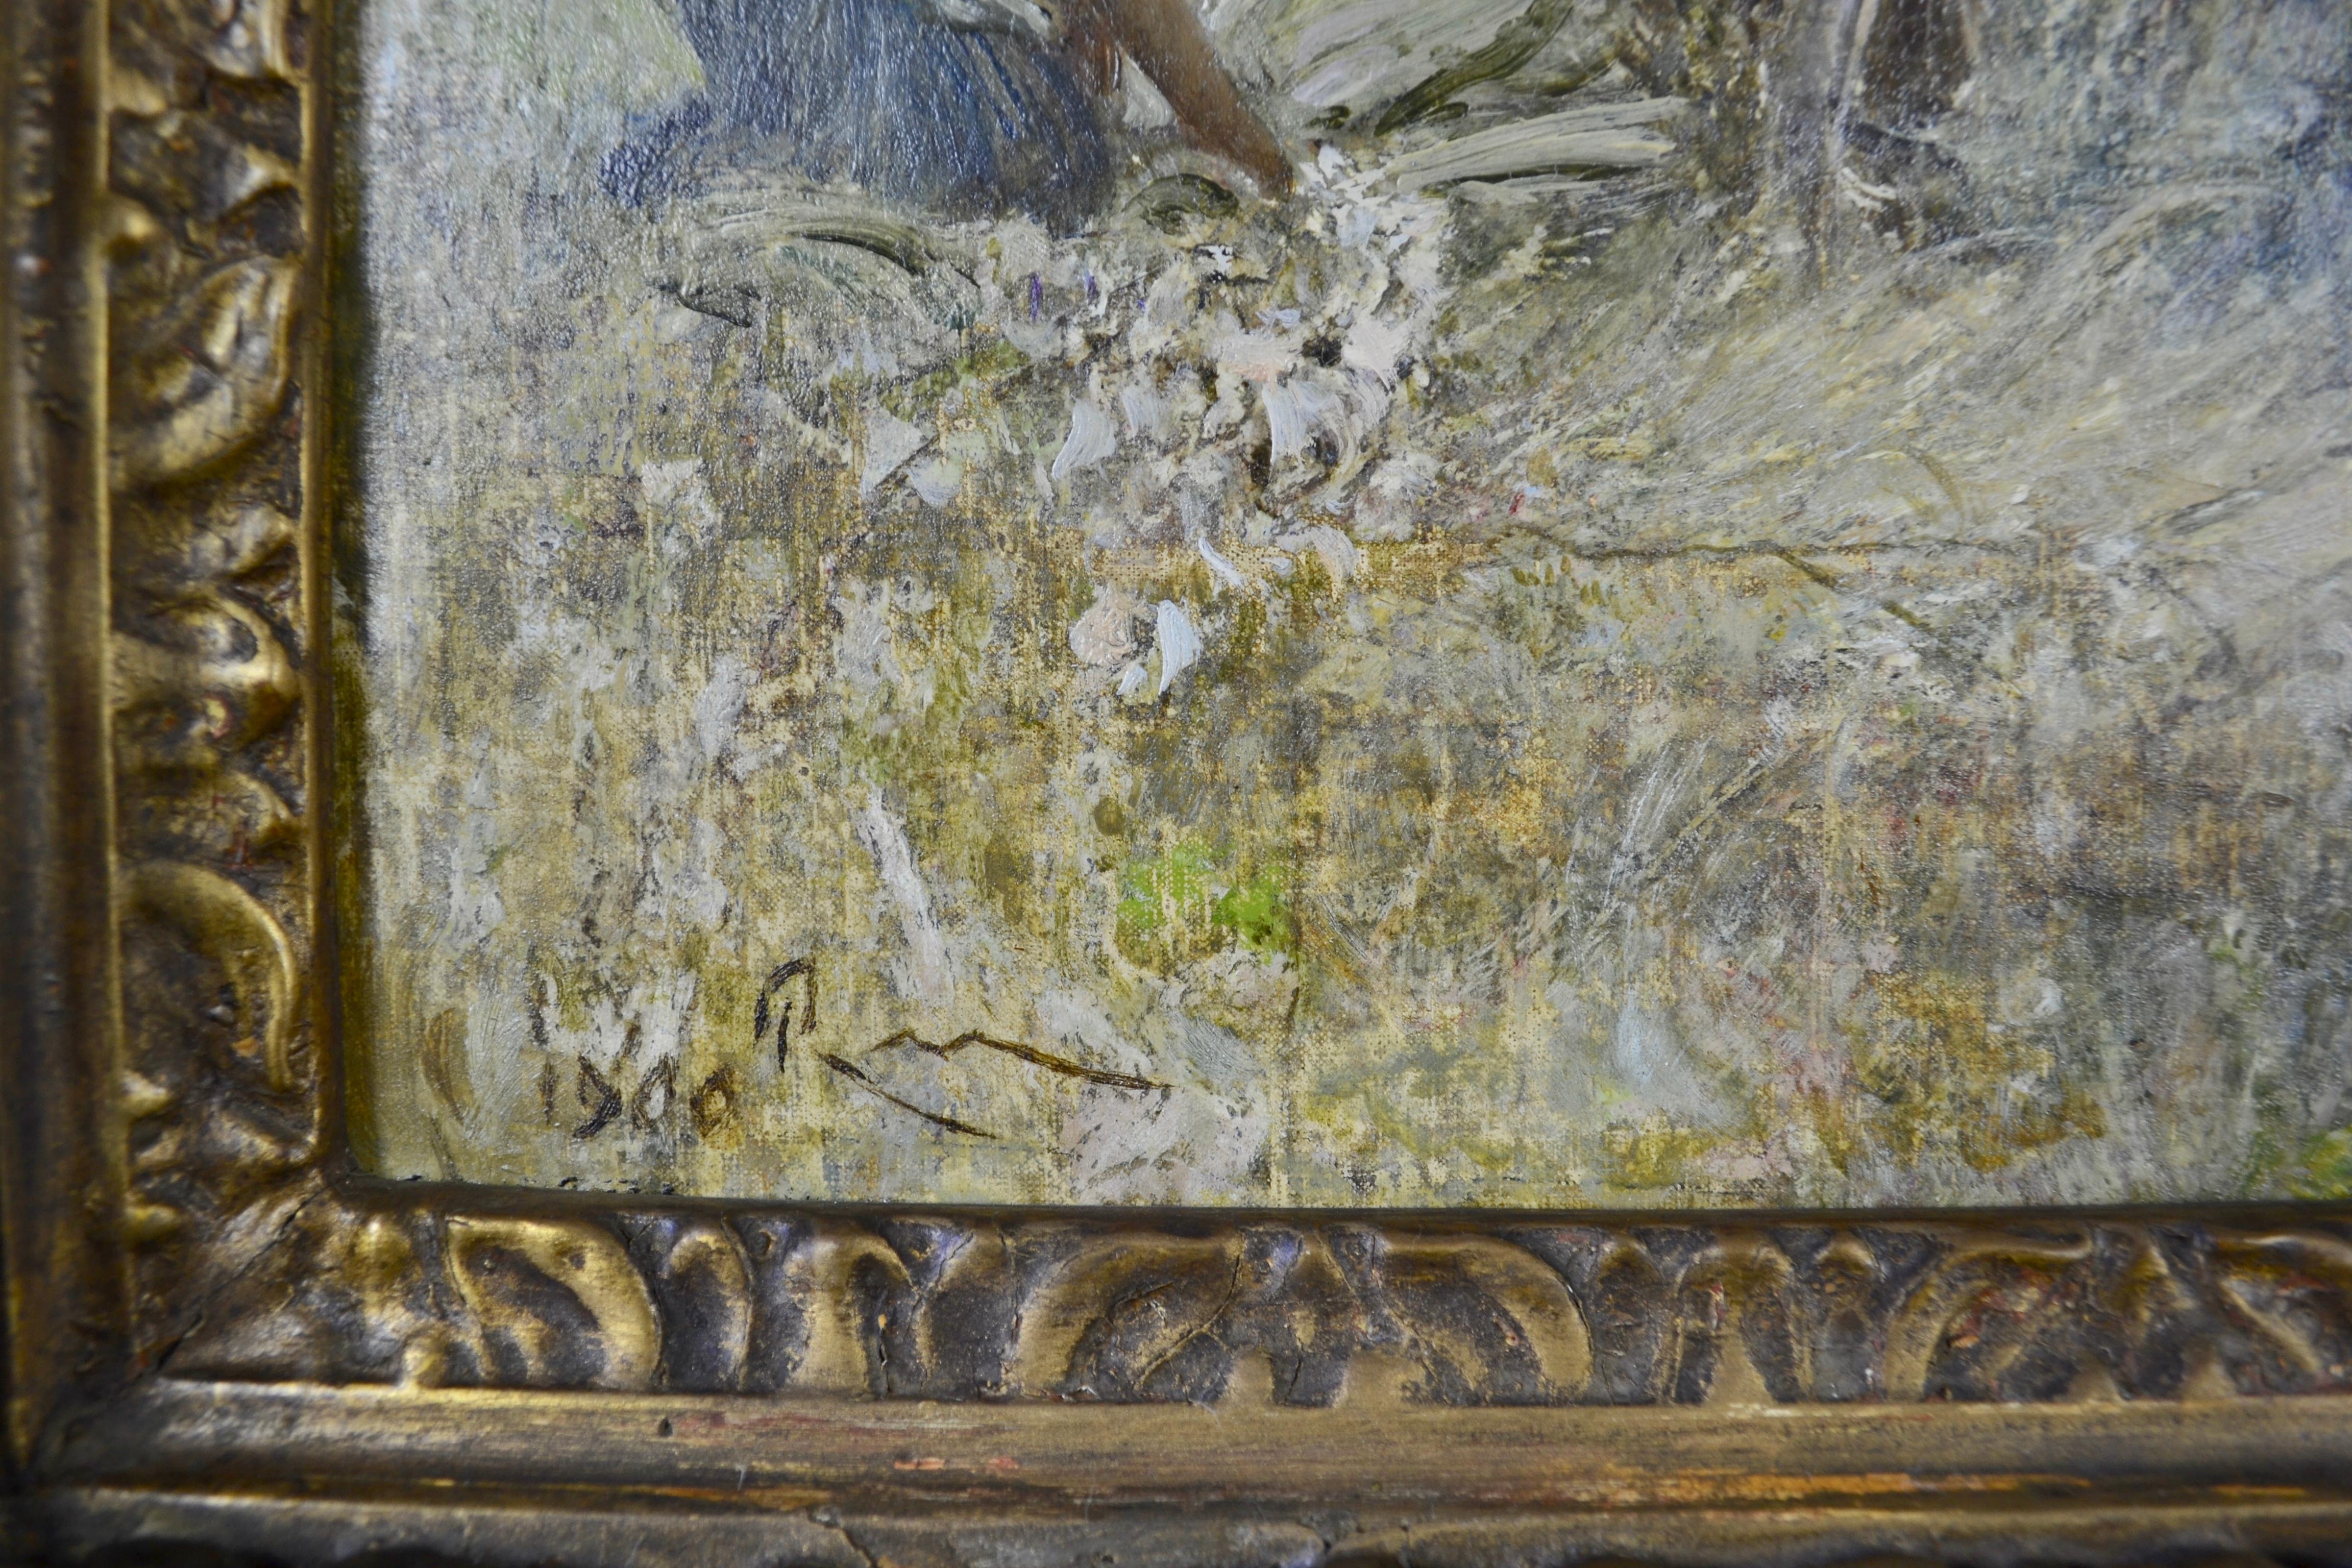 ROBERT WALKER MACBETH, RA
(1848-1910)

Fenland-Schilfschneider

Signiert mit Initialen und datiert 1900
Öl auf Leinwand

59 x 79 cm, 23 ¼ x 31 Zoll.
(Rahmengröße 82 x 102 cm., 32 ¼ x 40 Zoll.)

Provenienz:
Agnews;
Fine Art Society, London.

Macbeth